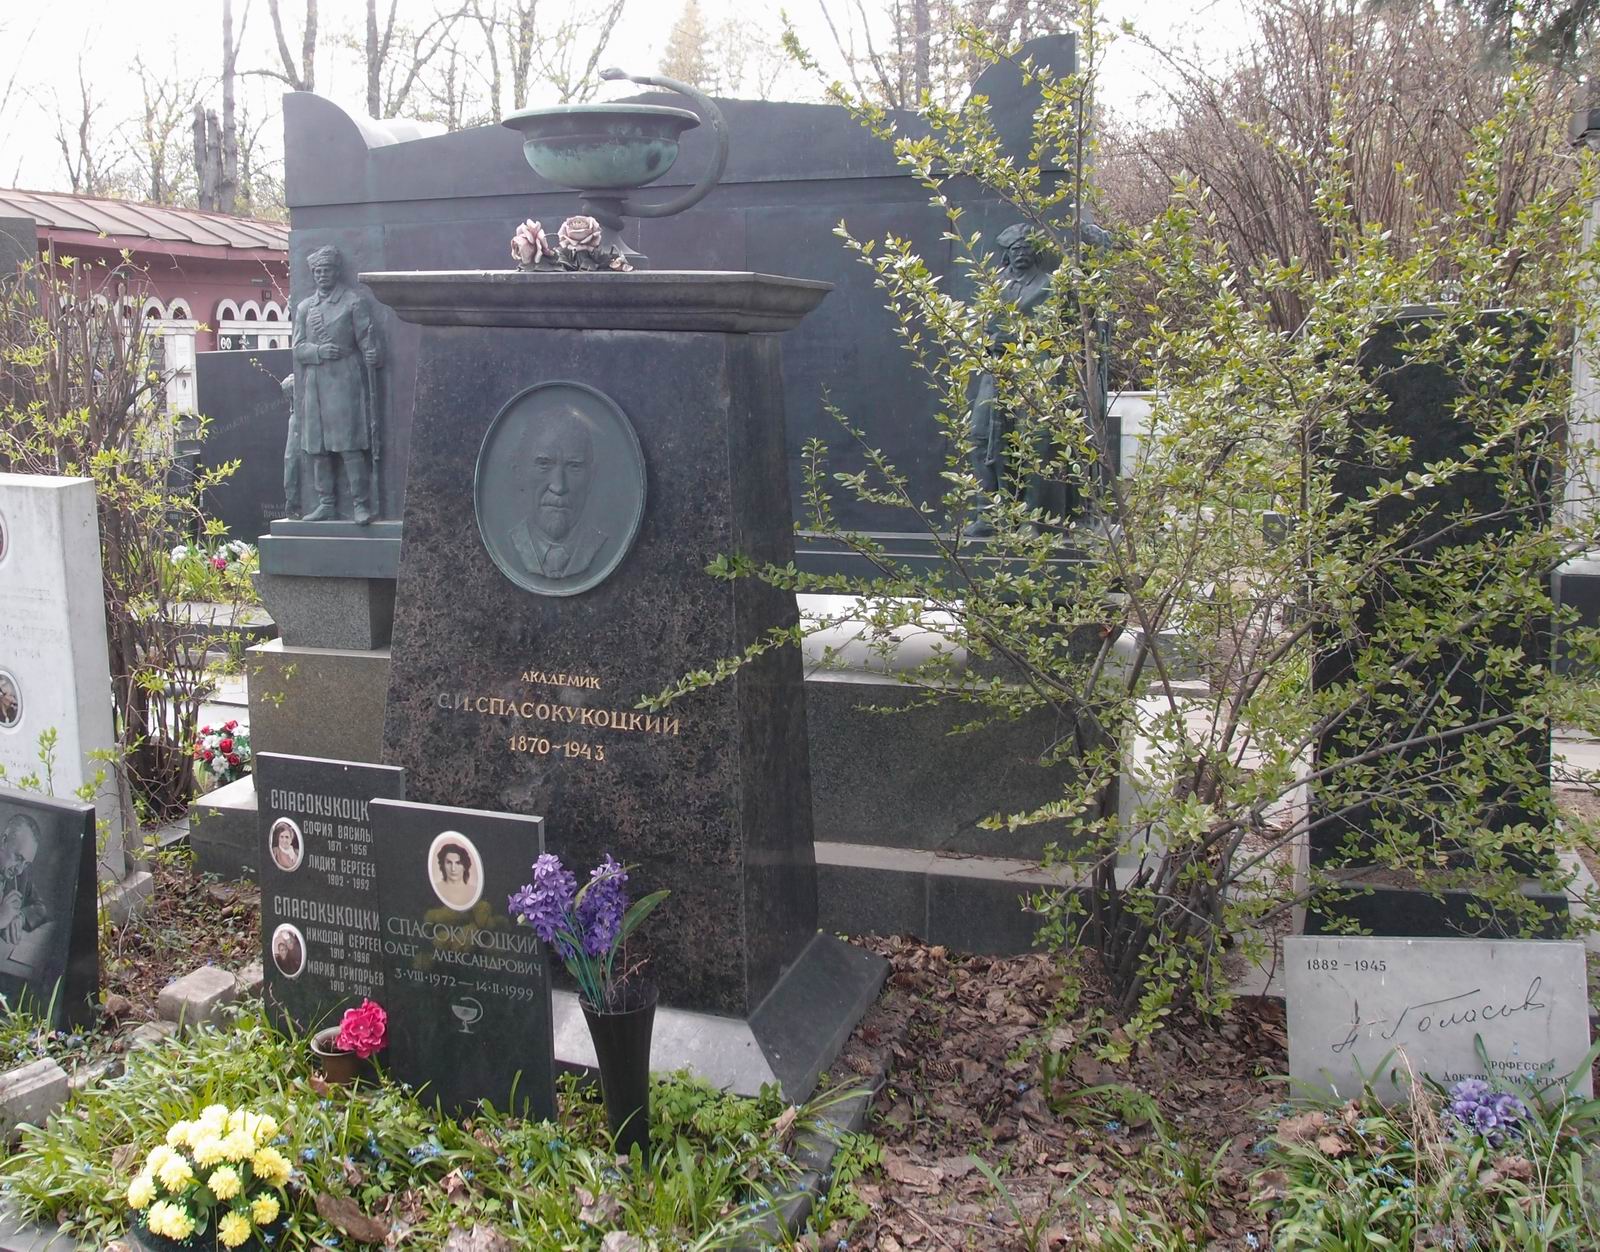 Памятник на могиле Спасокукоцкого С.И. (1870–1943), ск. Н.Гаврилов, арх. М.Барщ, на Новодевичьем кладбище (2–31–22).